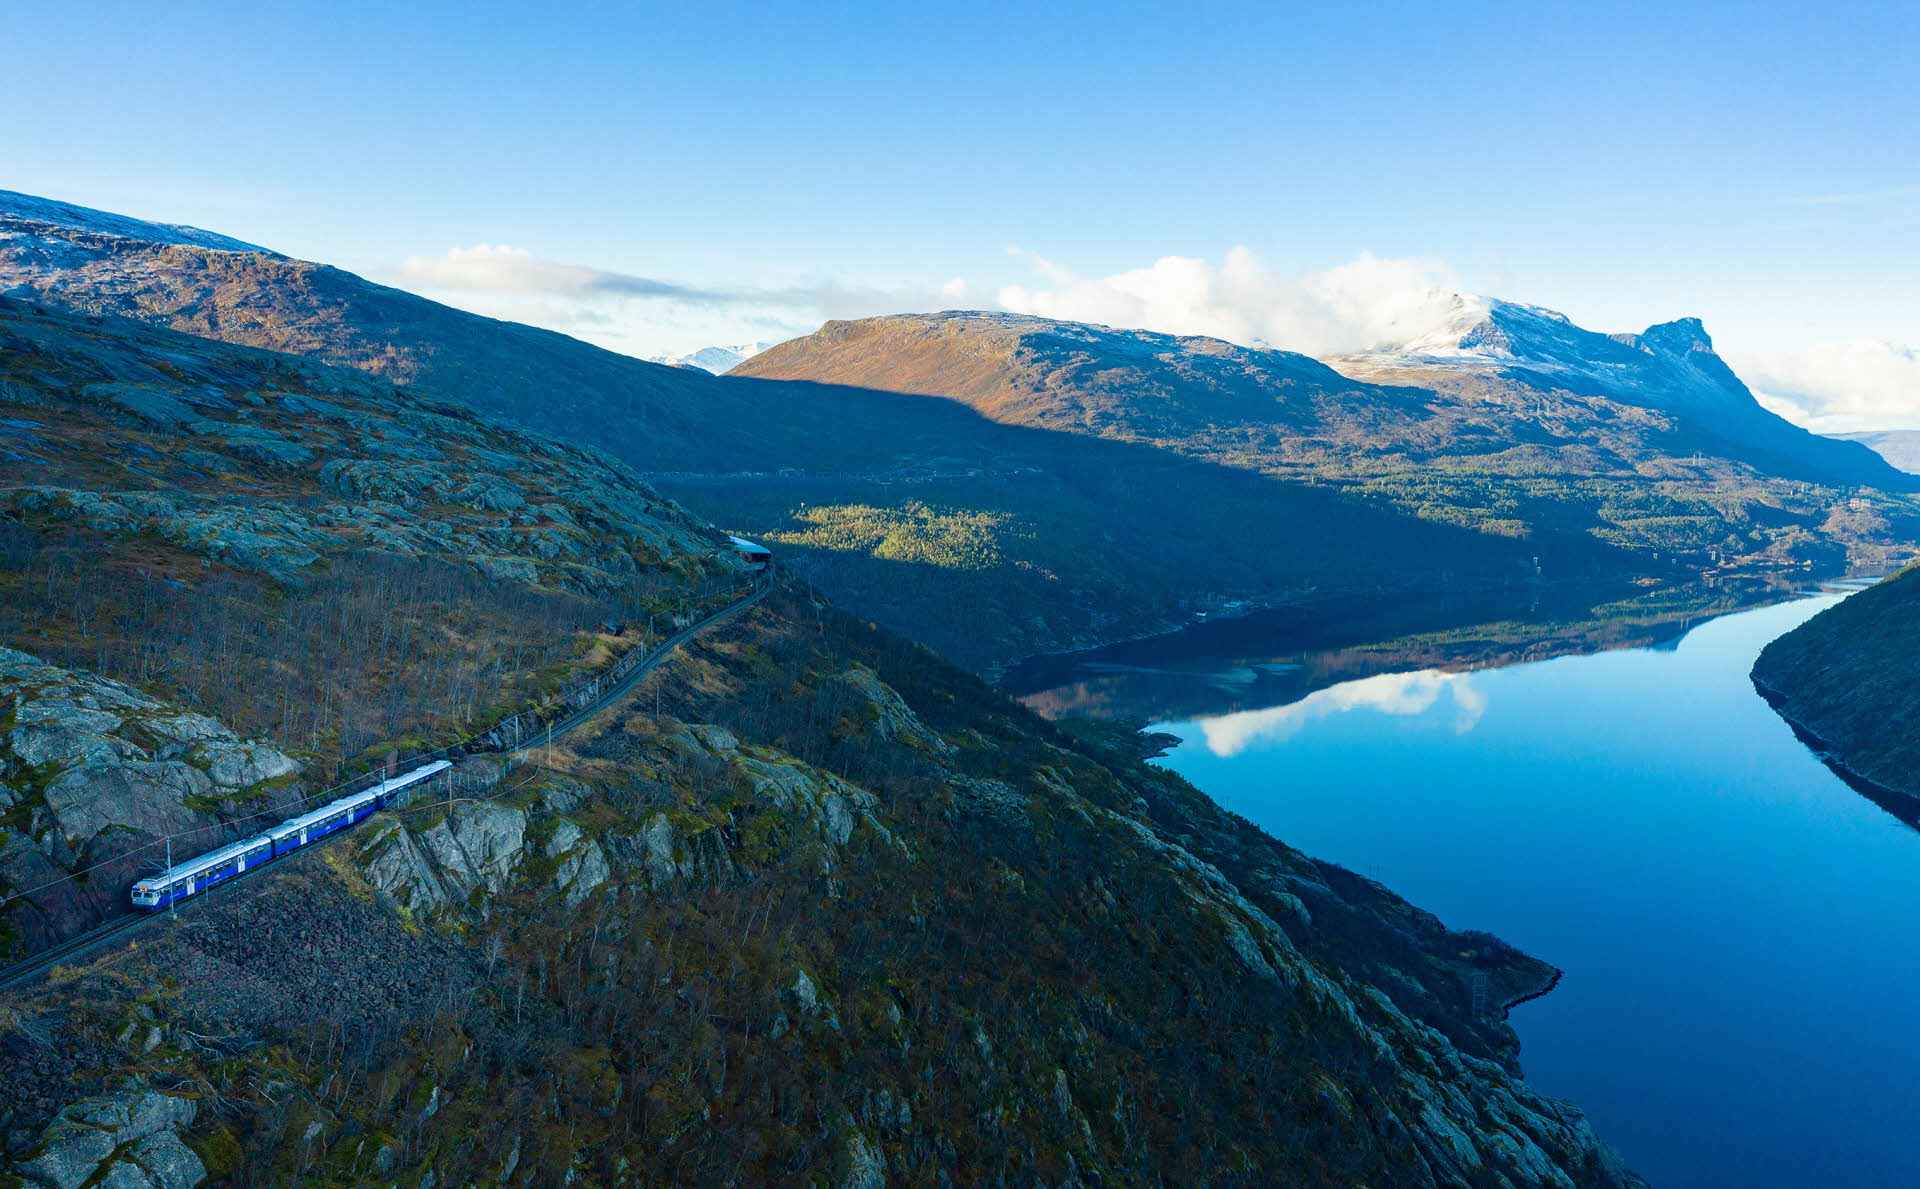 ノルウェーのナルヴィク、三両編成の青いアークティックトレインが秋の山を駆け上がり、眼下には穏やかなロンバックスフィヨルドが広がる